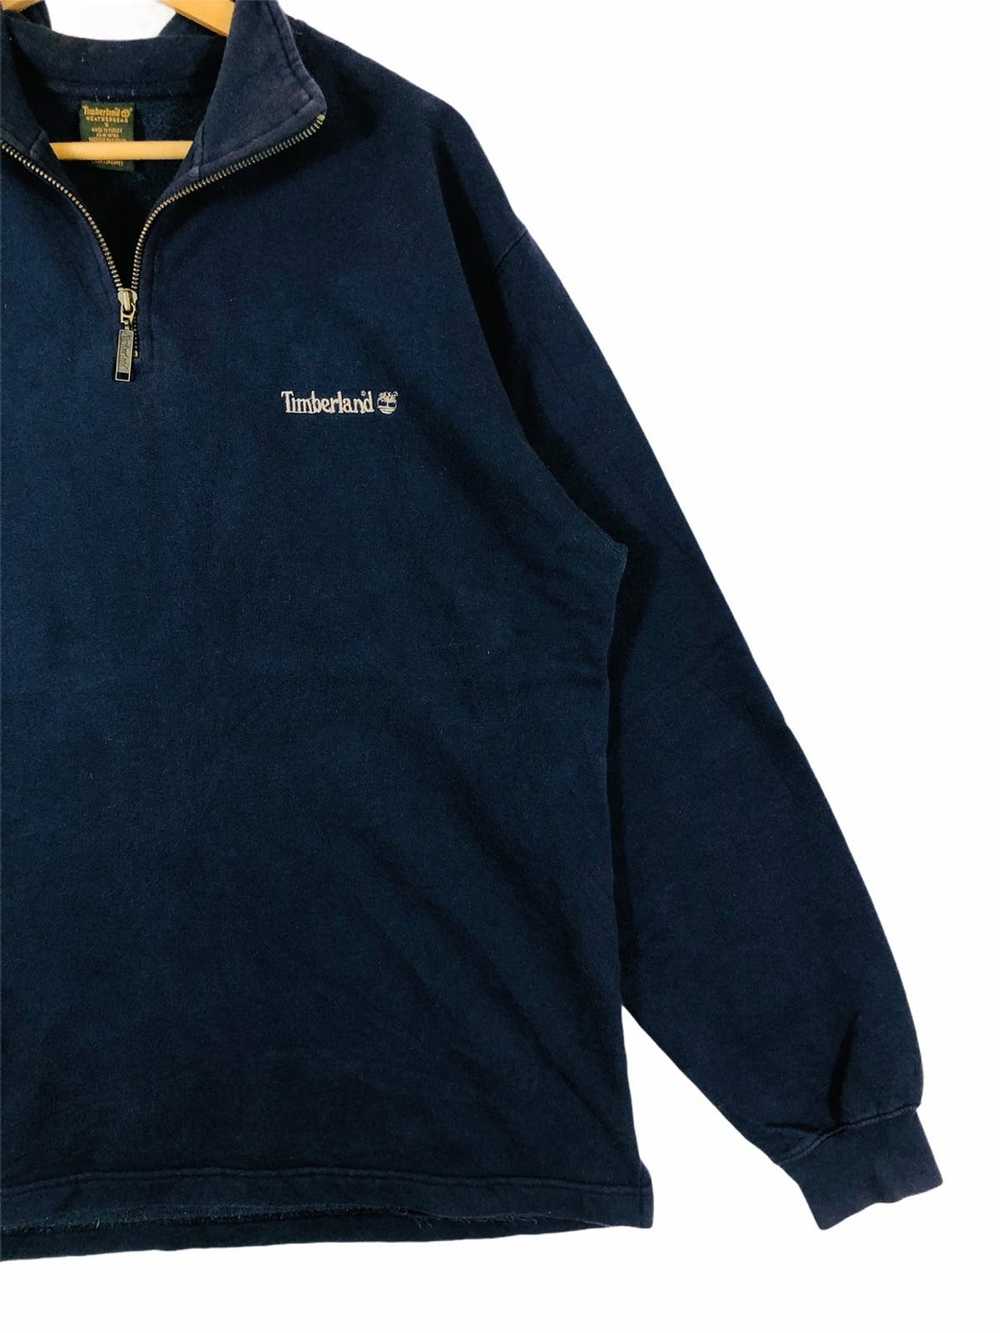 Timberland × Vintage Vintage sweatshirt timberlan… - image 7